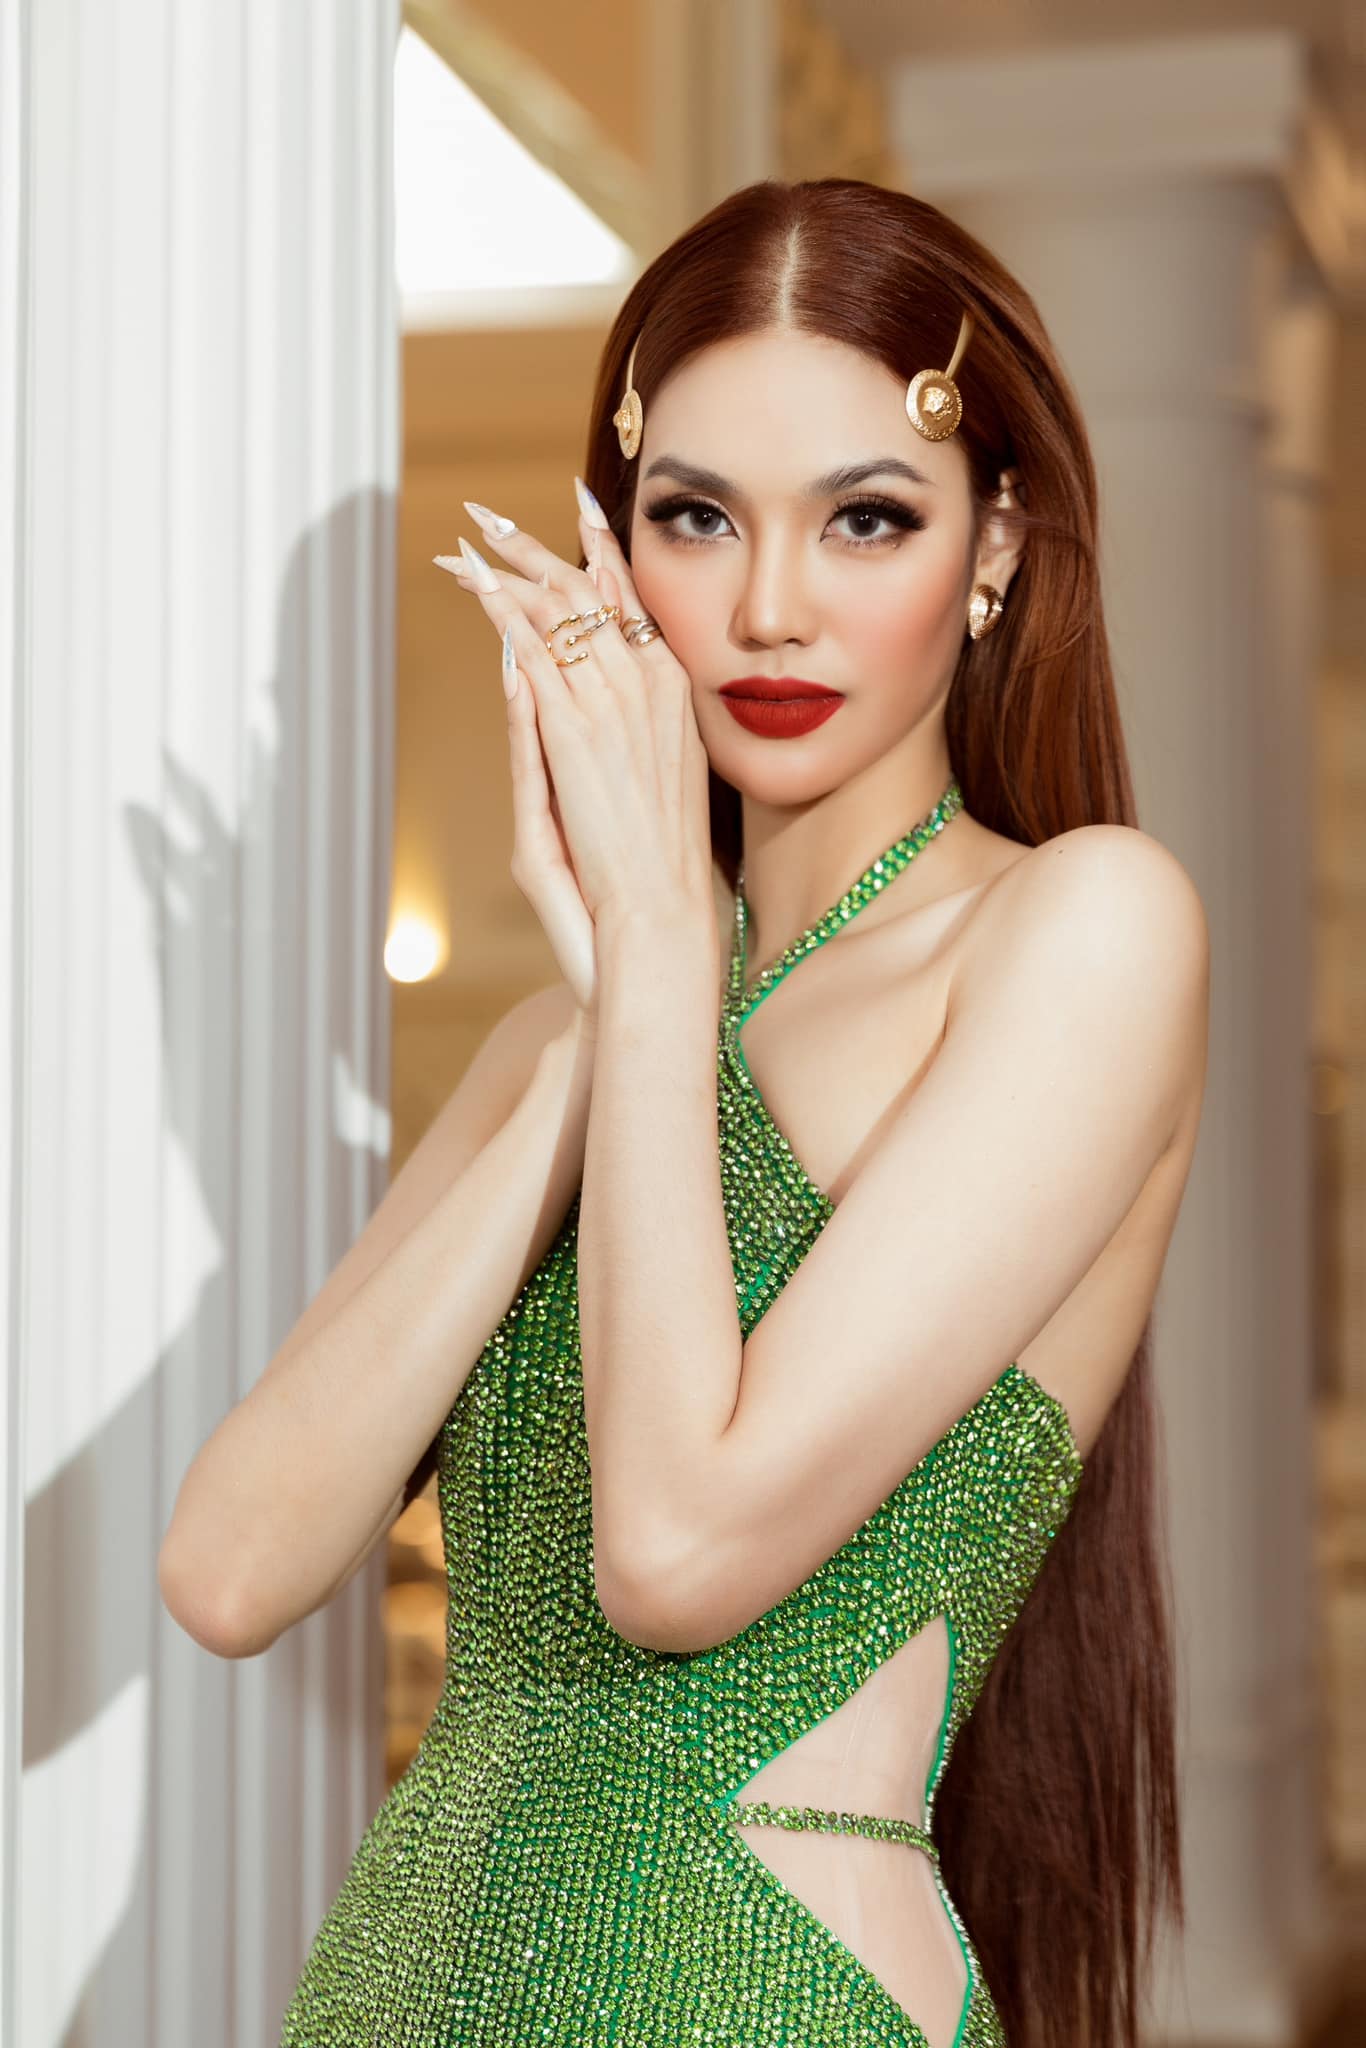 Siêu mẫu Lan Khuê: Khó khăn chọn ra người chiến thắng Miss Charm 2023, giải thích về việc bấm điện thoại khi làm giám khảo - Ảnh 3.